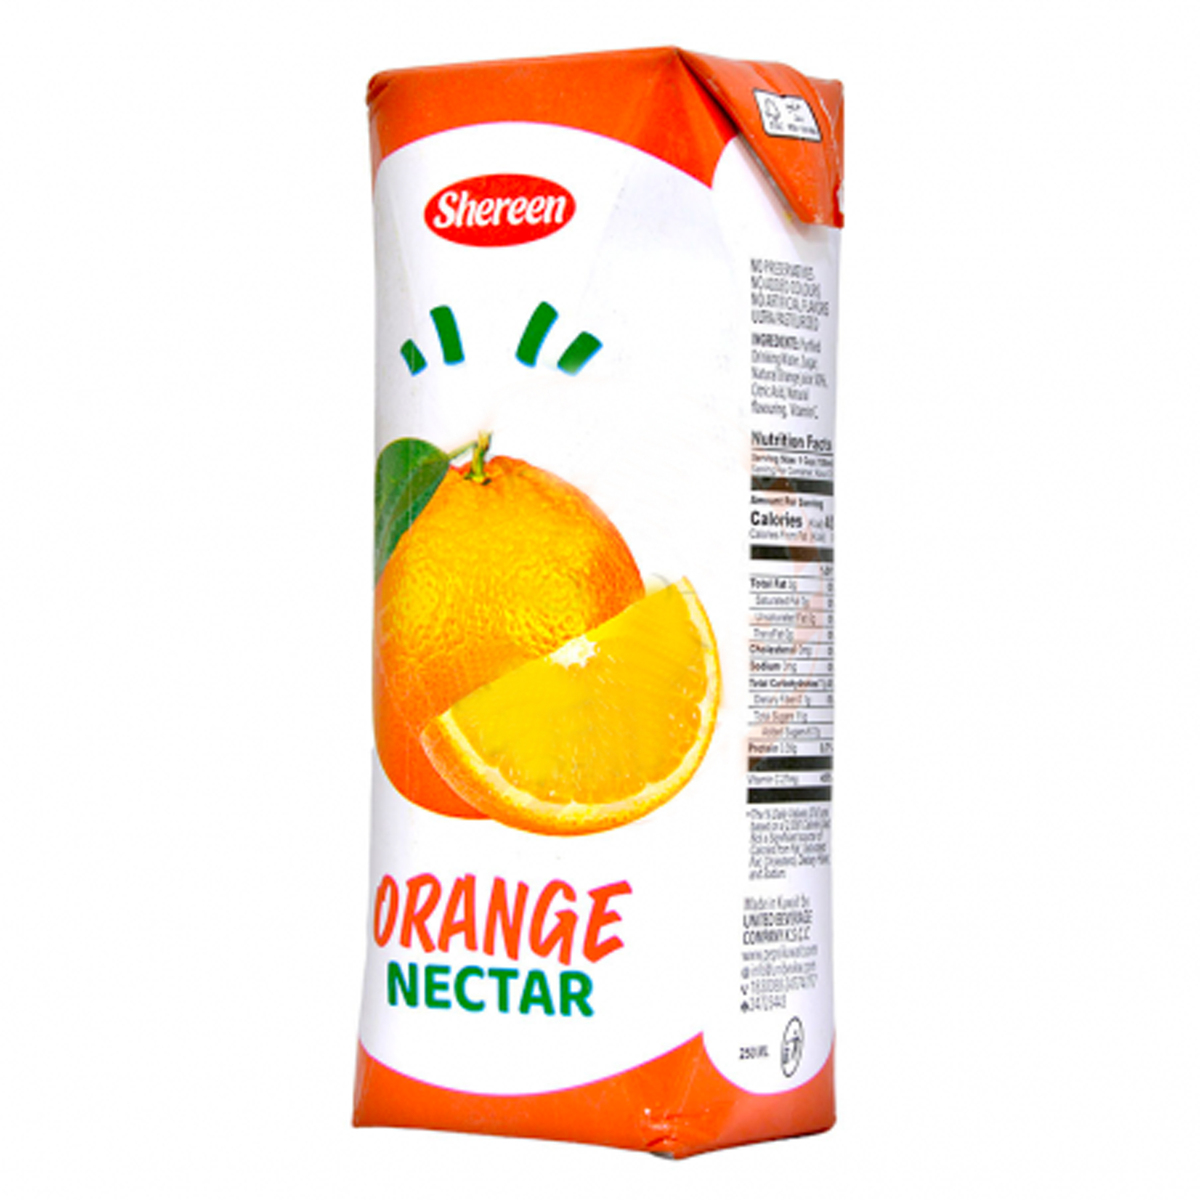 شيرين عصير برتقال نكتارعبوة تيترا 250 مل